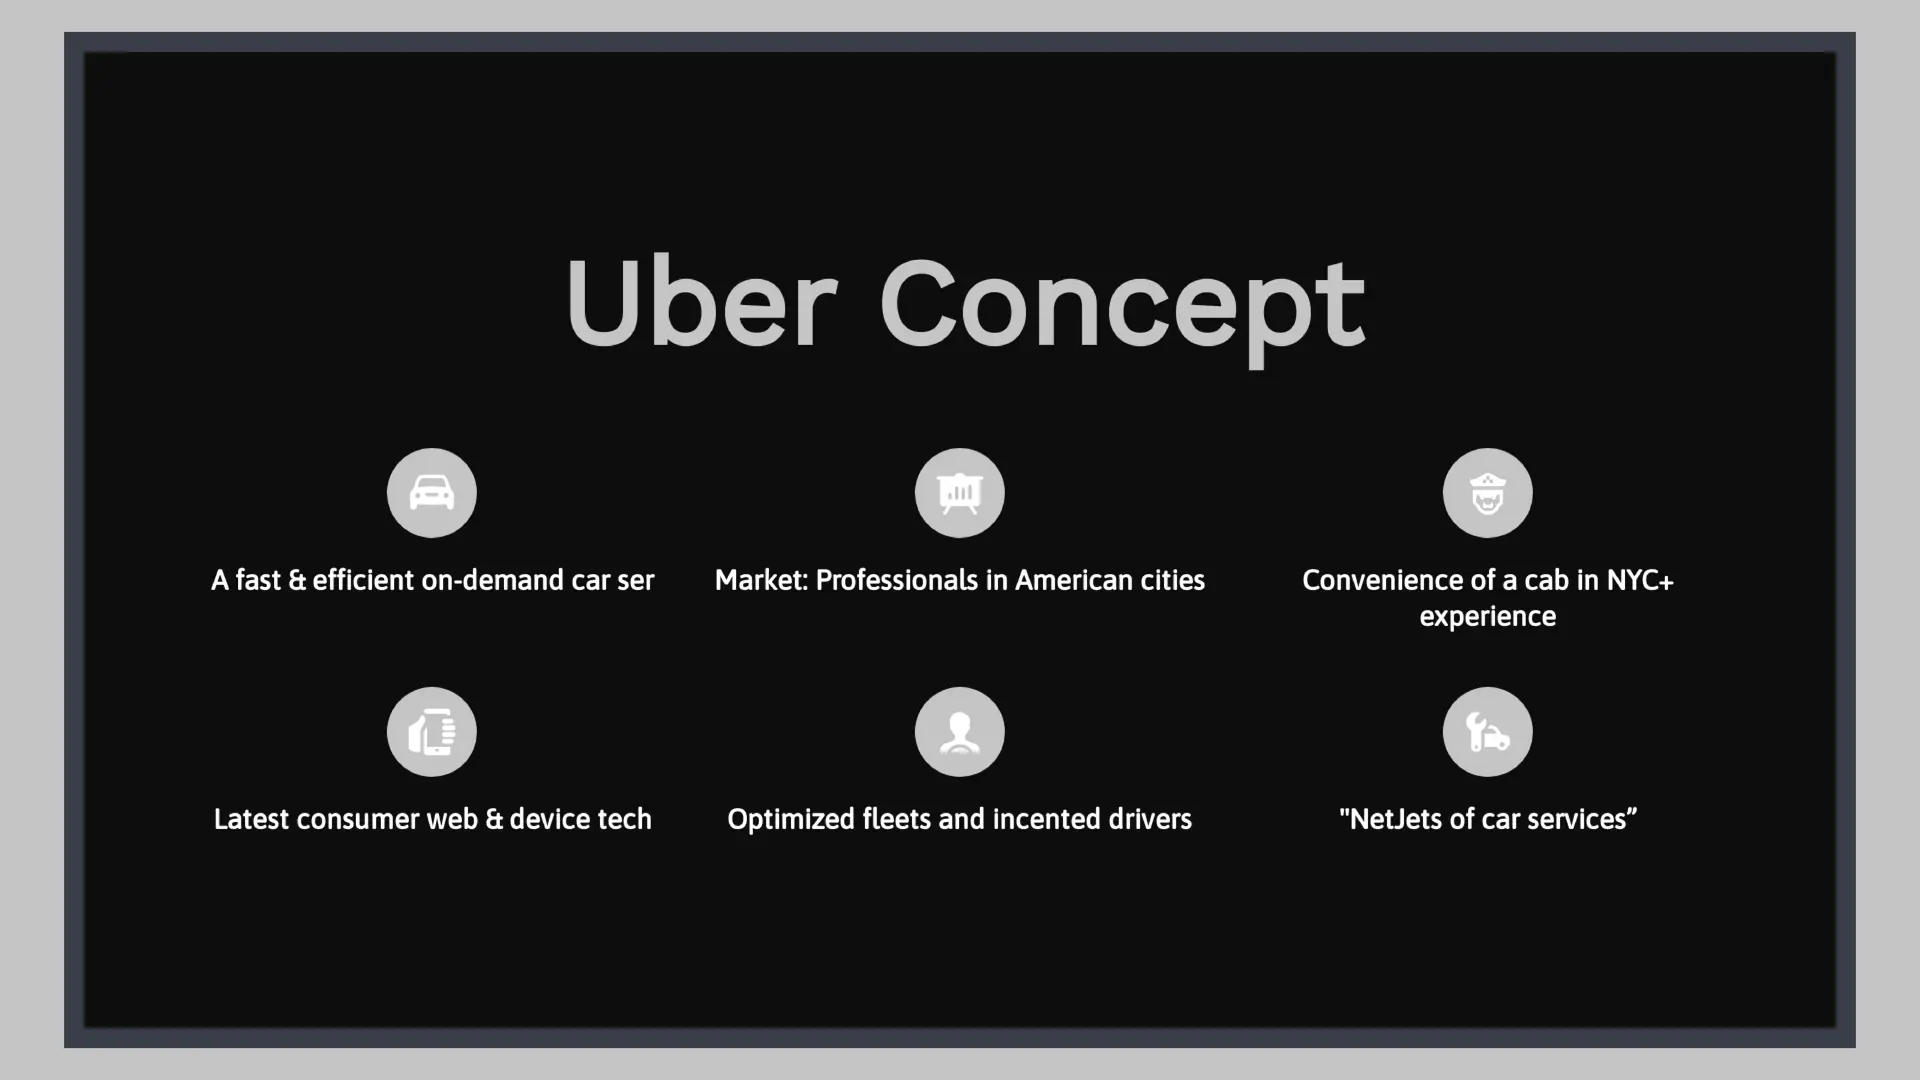 Uber Pitch Deck: Bạn đang muốn tìm một bản thuyết trình chuyên nghiệp, ấn tượng và độc đáo nhất để giới thiệu ý tưởng kinh doanh của mình? Hãy khám phá bộ sưu tập Uber Pitch Deck tuyệt vời này và xem qua hình ảnh để hiểu rõ hơn về sức mạnh của các bản thuyết trình này.